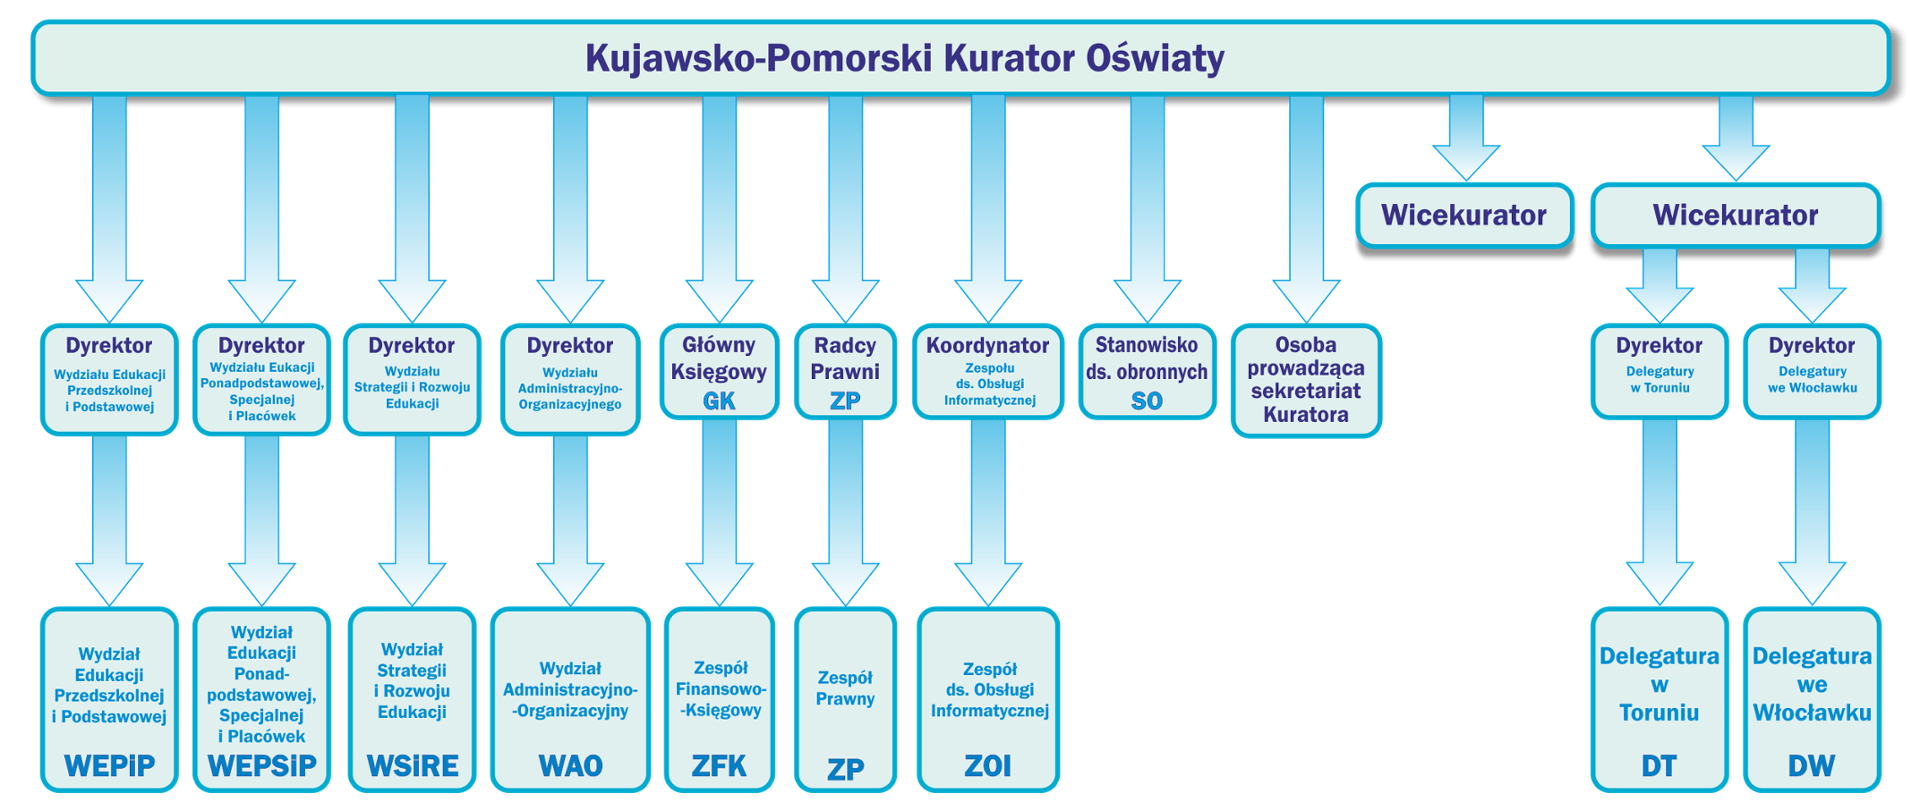 Schemat blokowy przedstawiający strukturę organizacyjną Kuratorium Oświaty w Bydgoszczy.